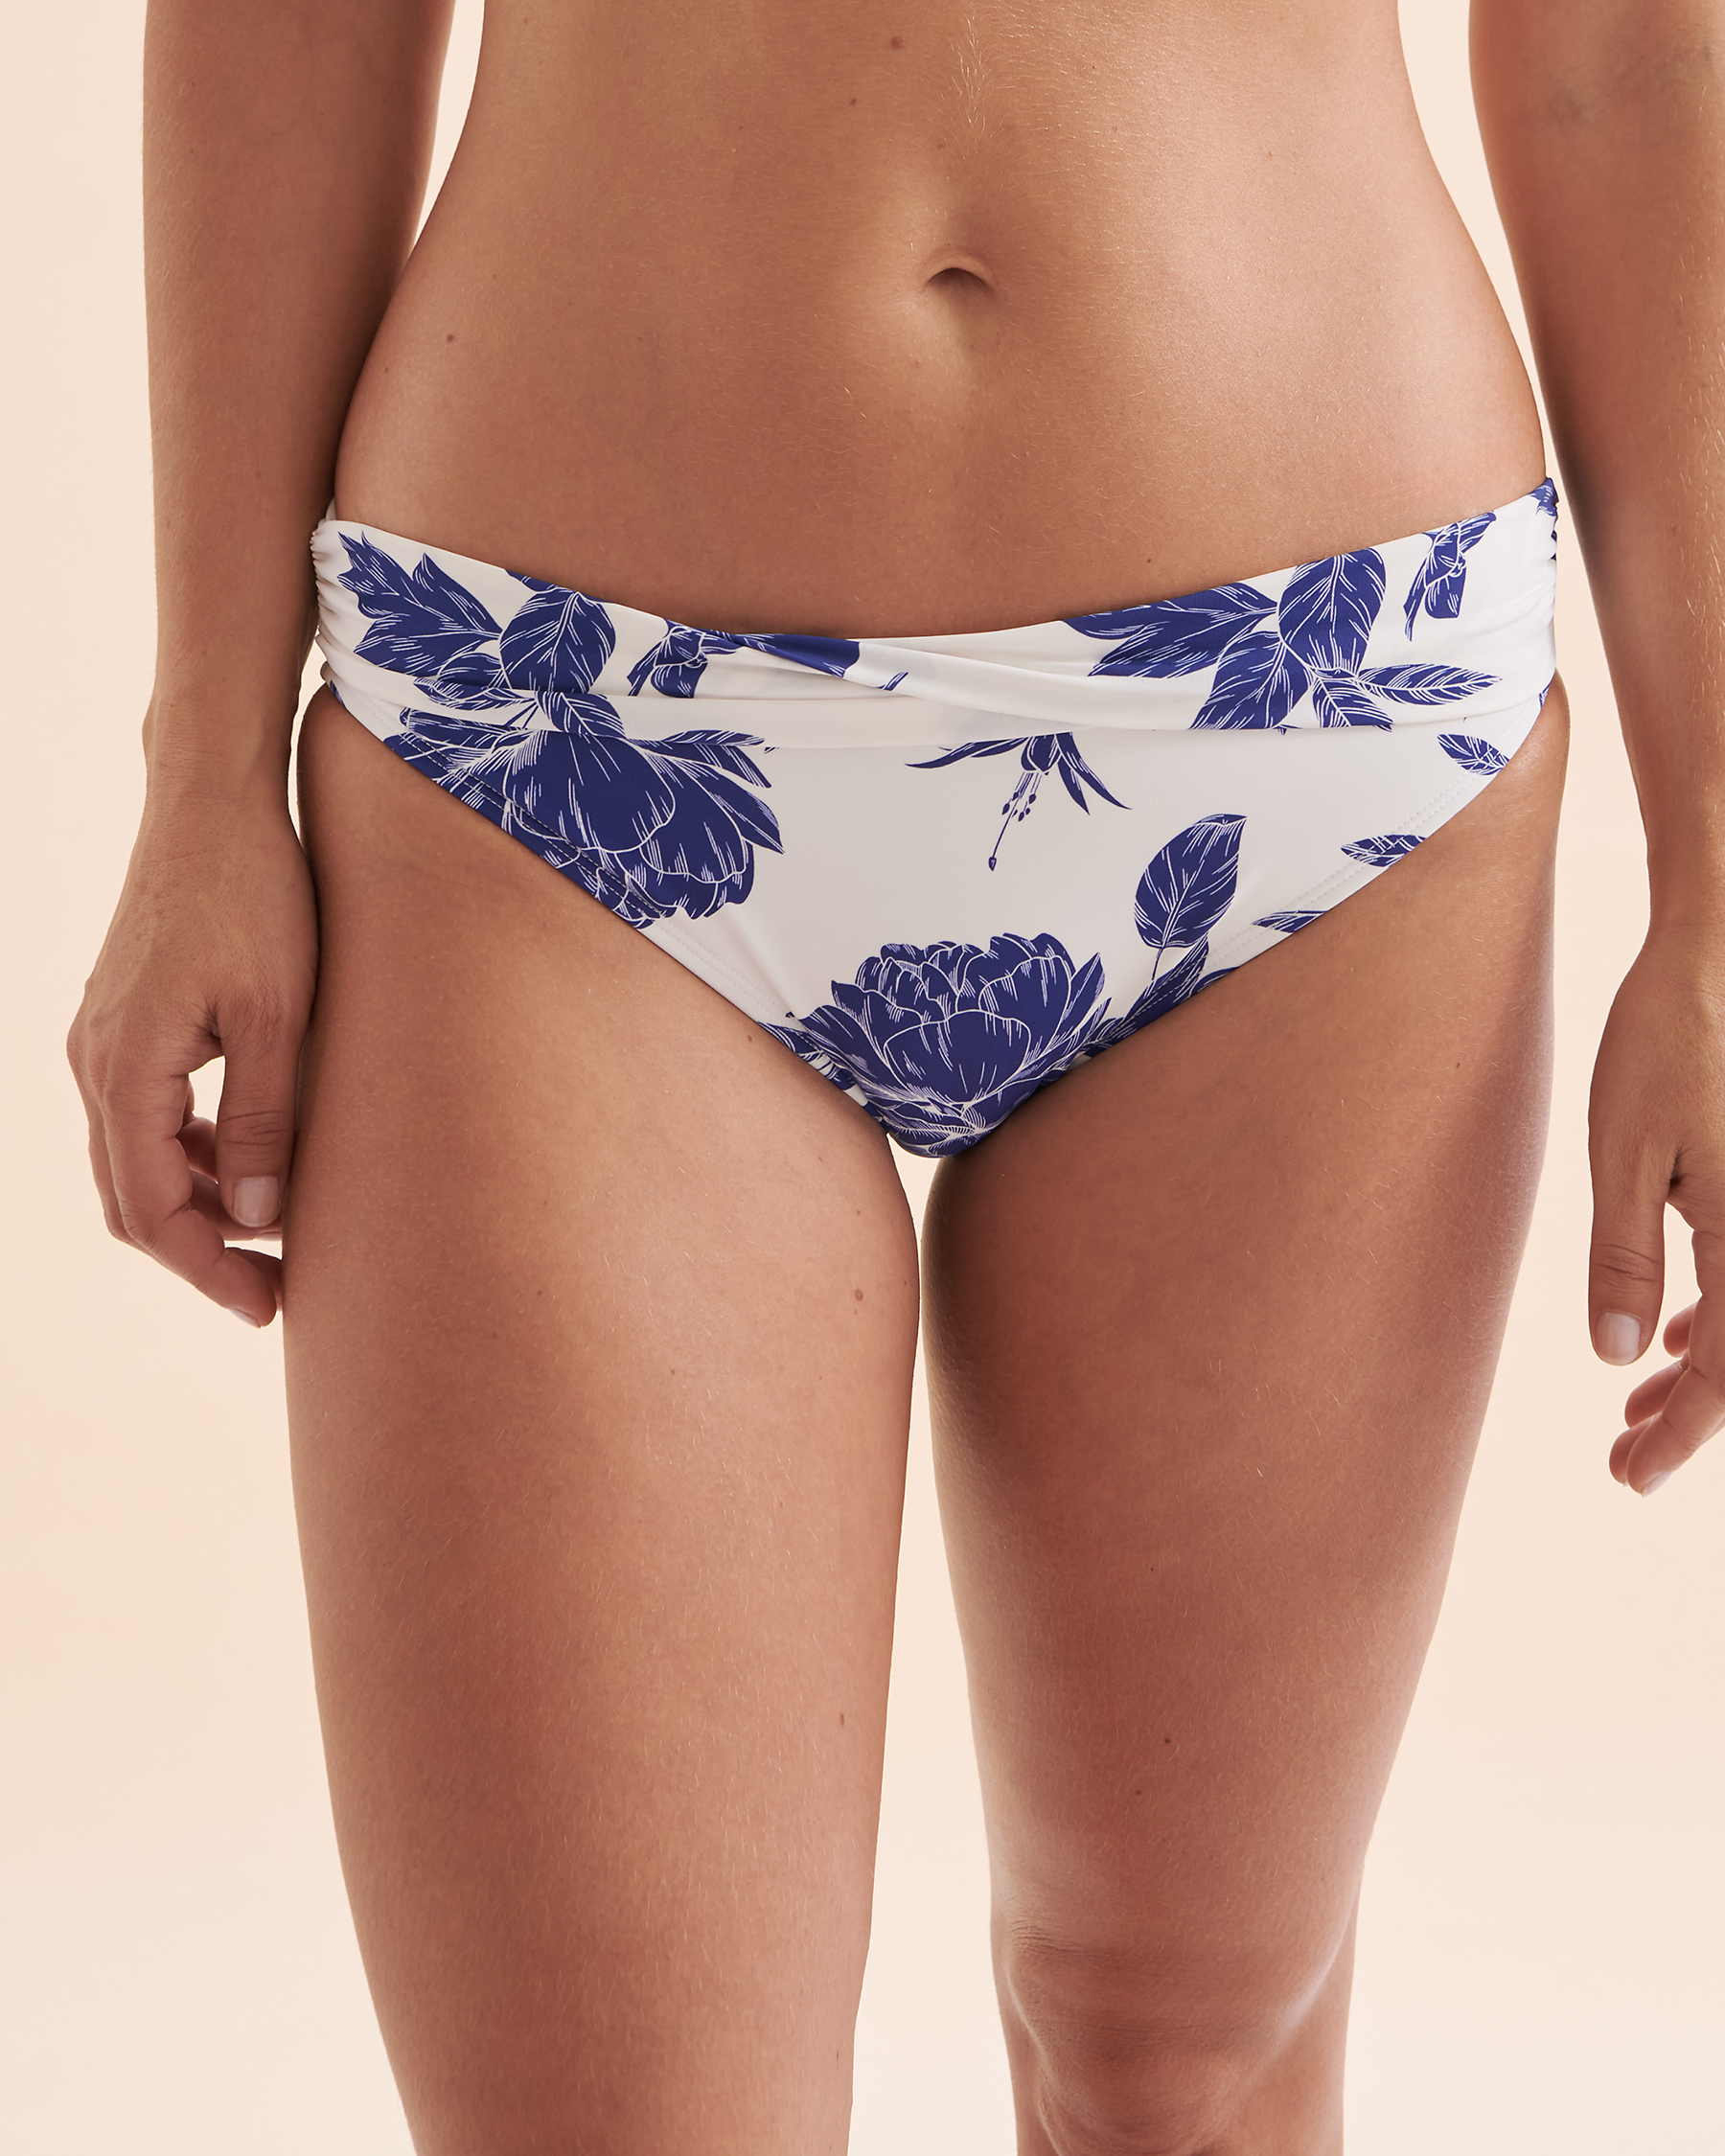 TURQUOISE COUTURE Bas de bikini bande de taille pliée Floral Fleurs bleues et blanches 01300271 - Voir5